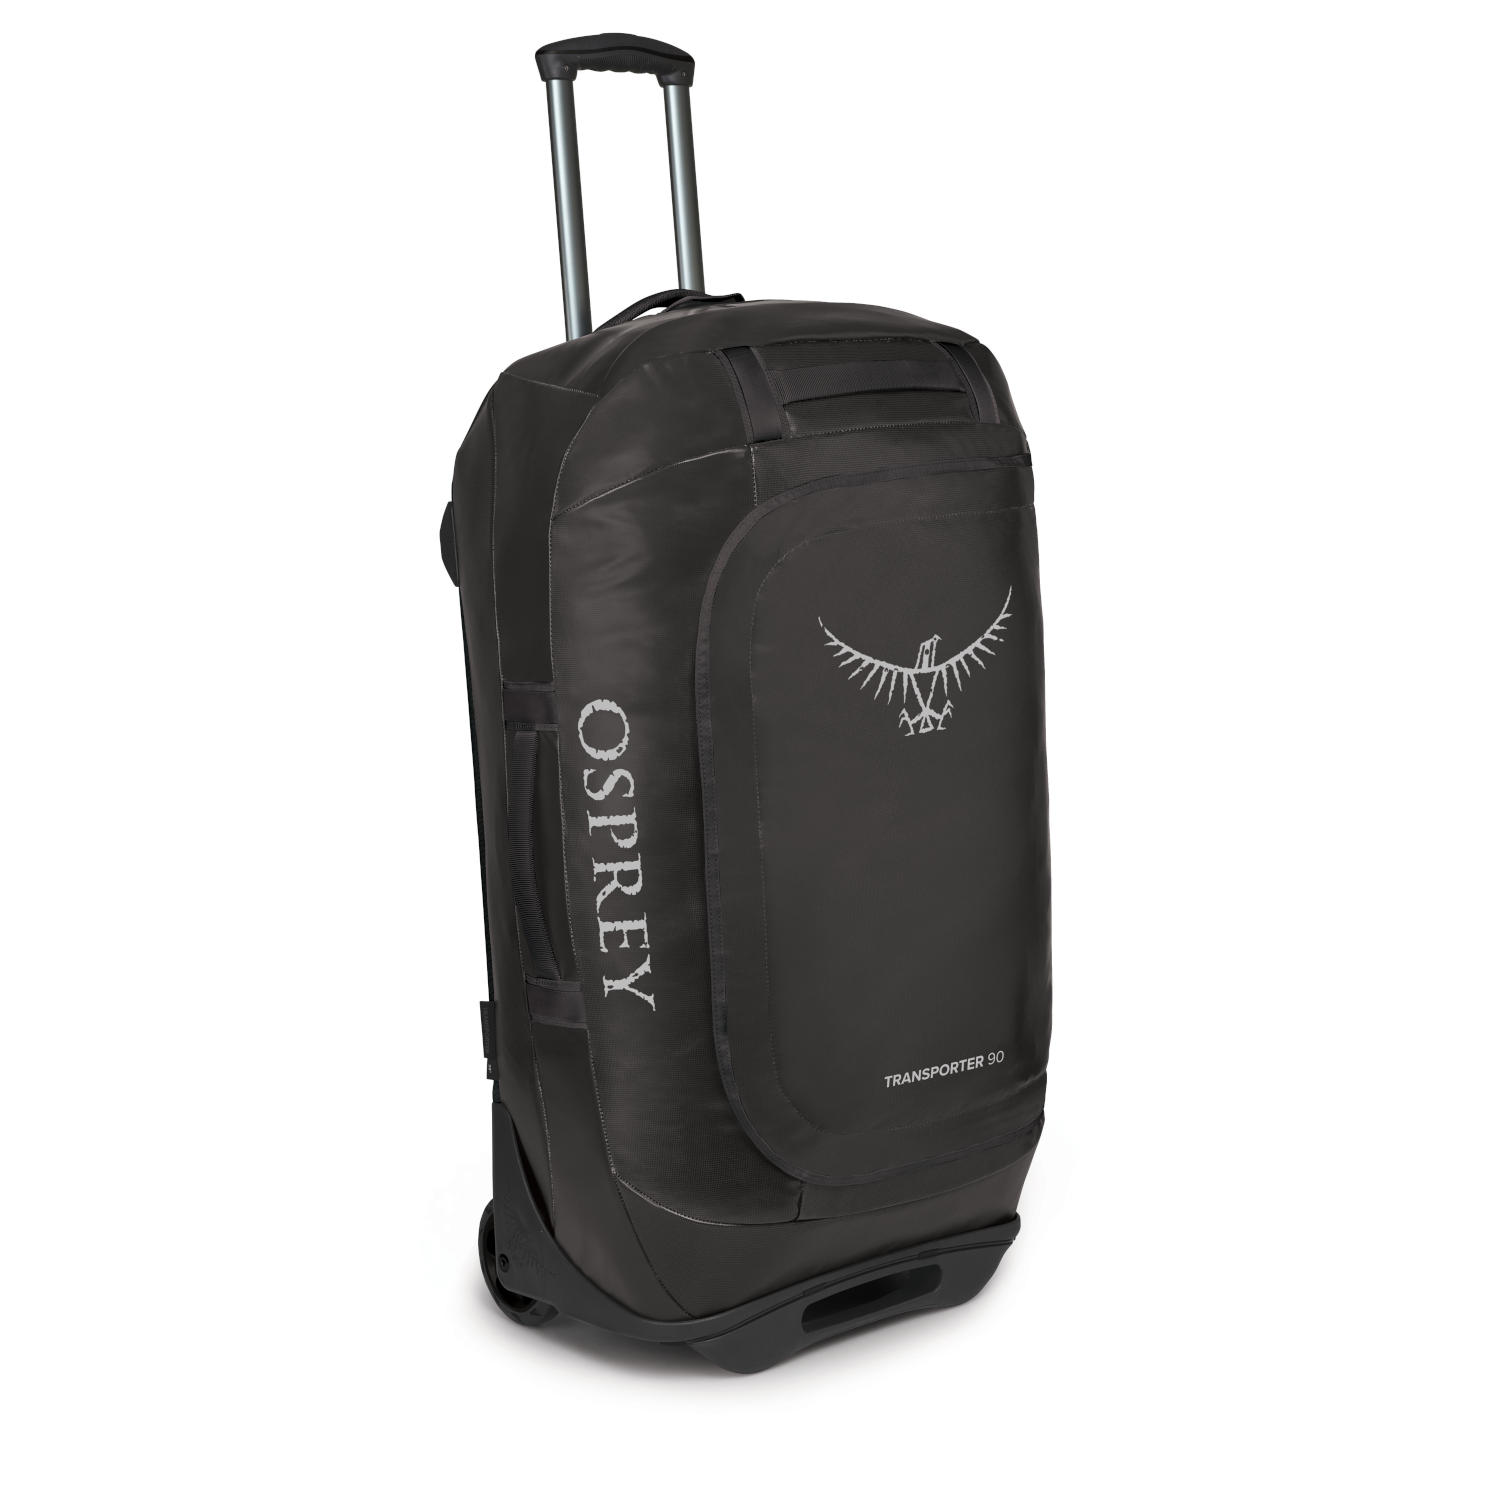 Picture of Osprey Rolling Transporter 90 Travel Bag - Black